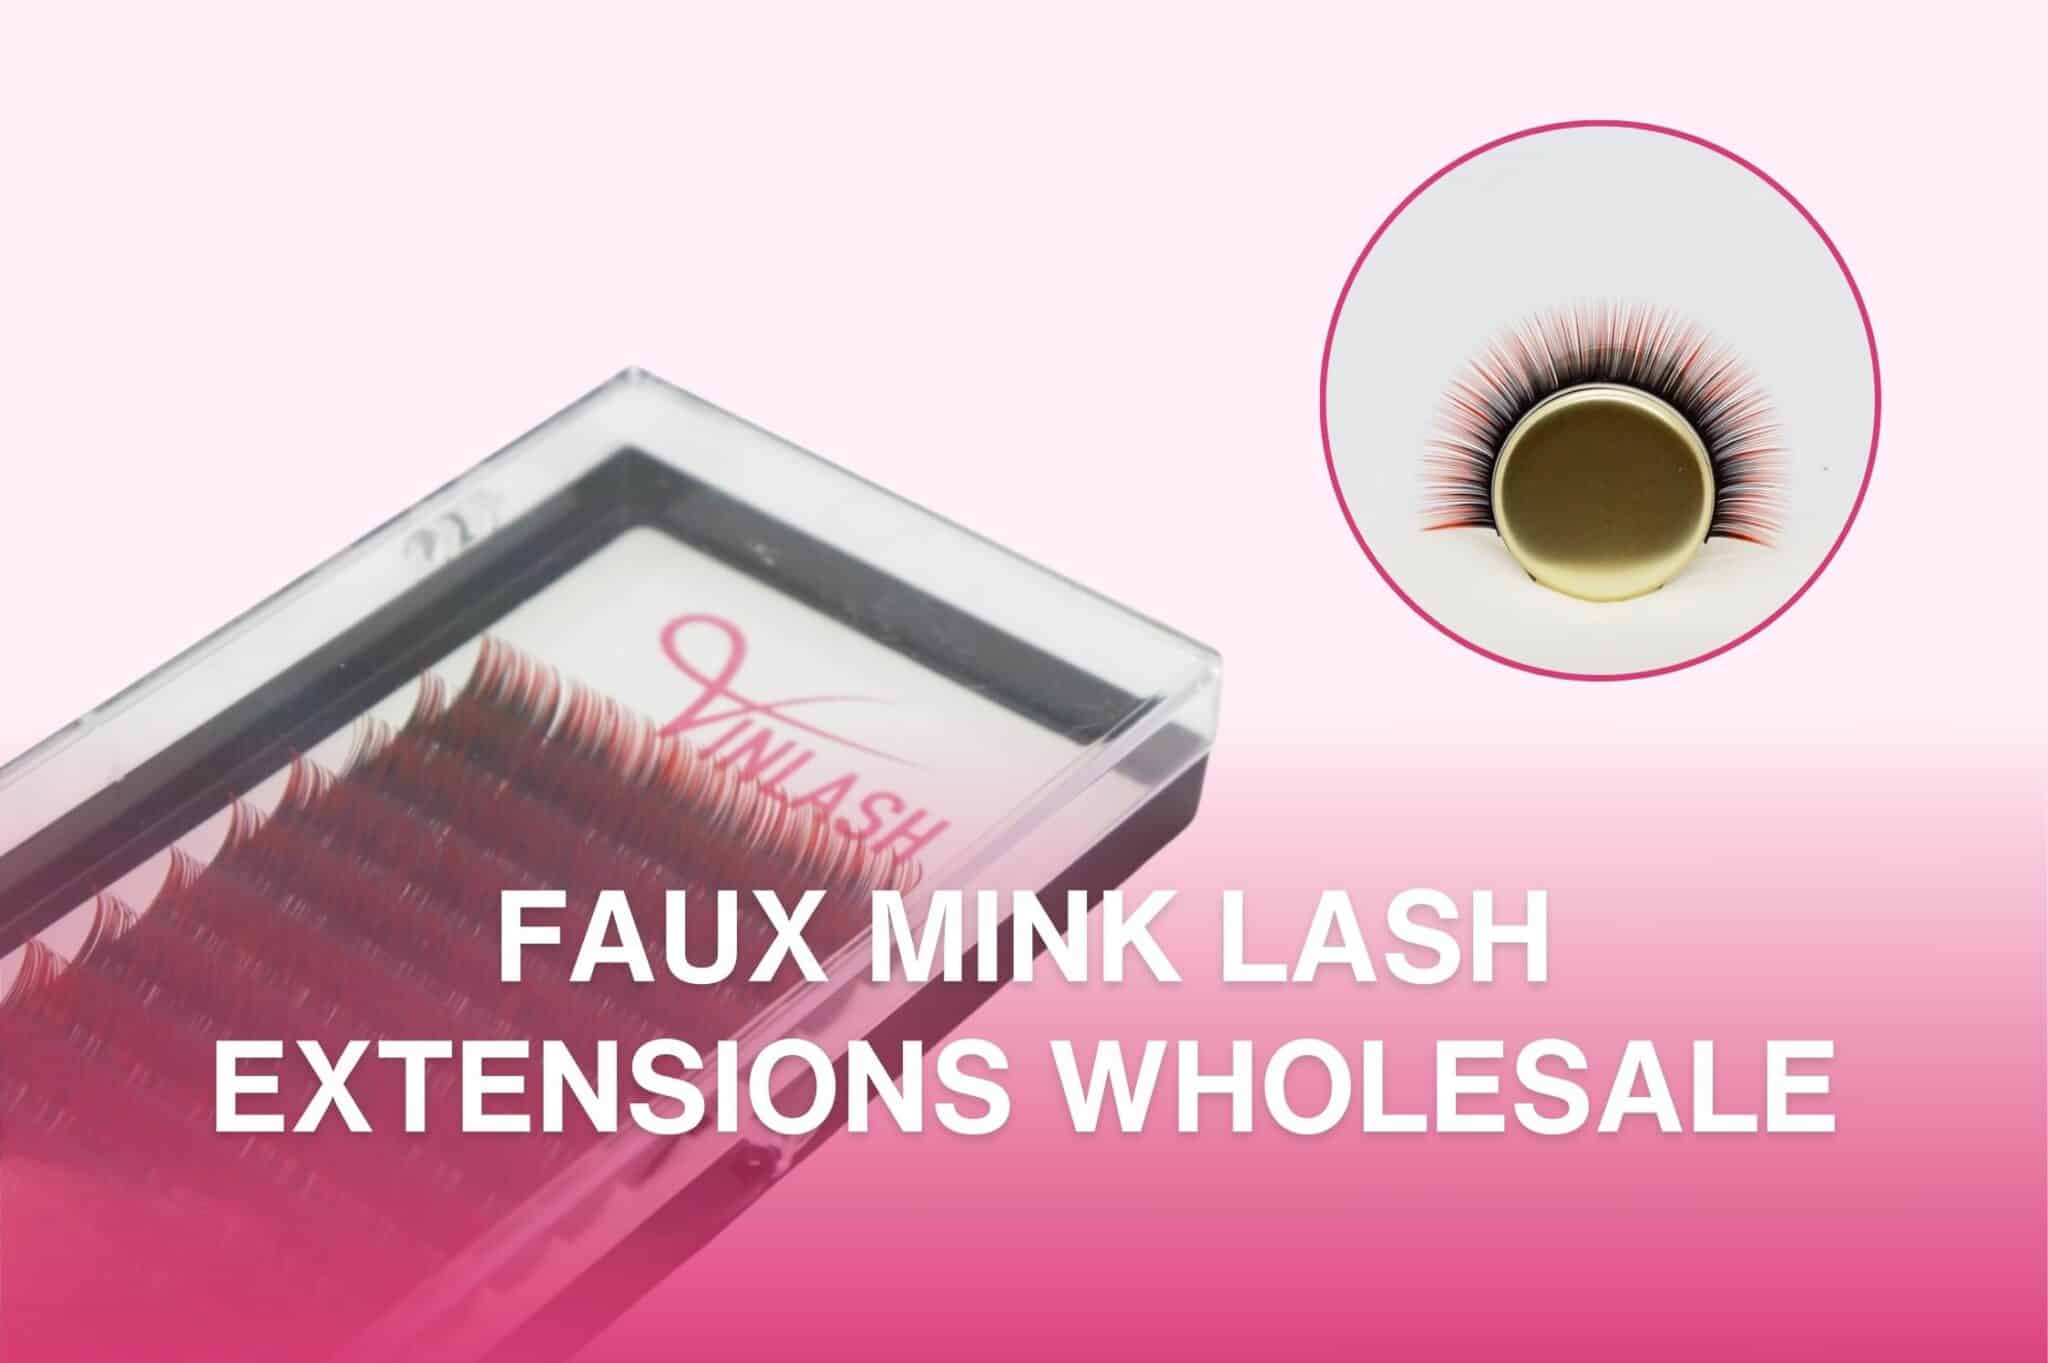 Faux Mink Lash Extensions Wholesale tag